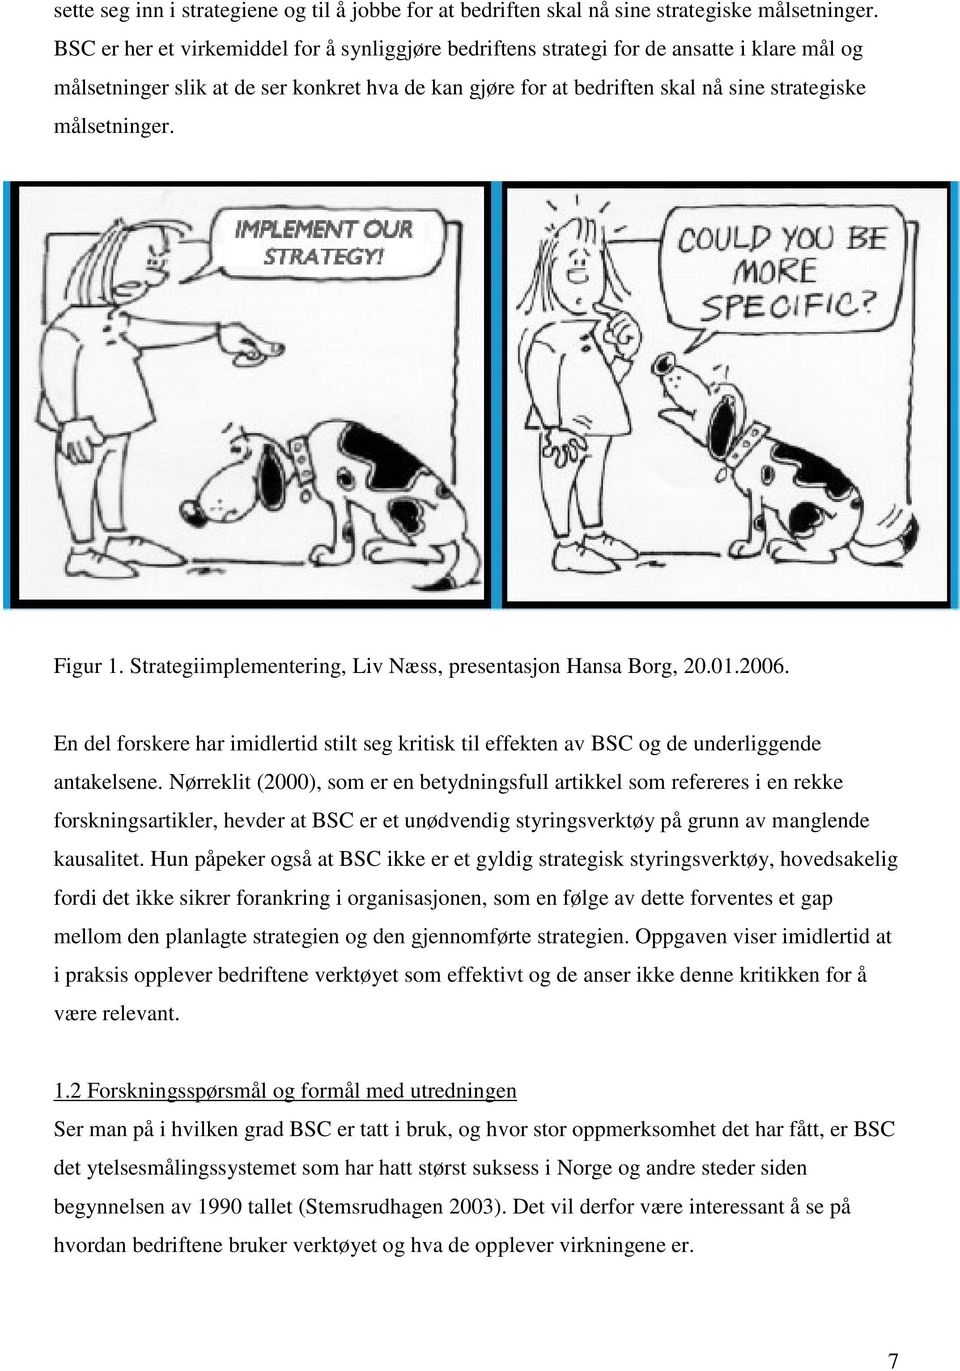 målsetninger. Figur 1. Strategiimplementering, Liv Næss, presentasjon Hansa Borg, 20.01.2006. En del forskere har imidlertid stilt seg kritisk til effekten av BSC og de underliggende antakelsene.